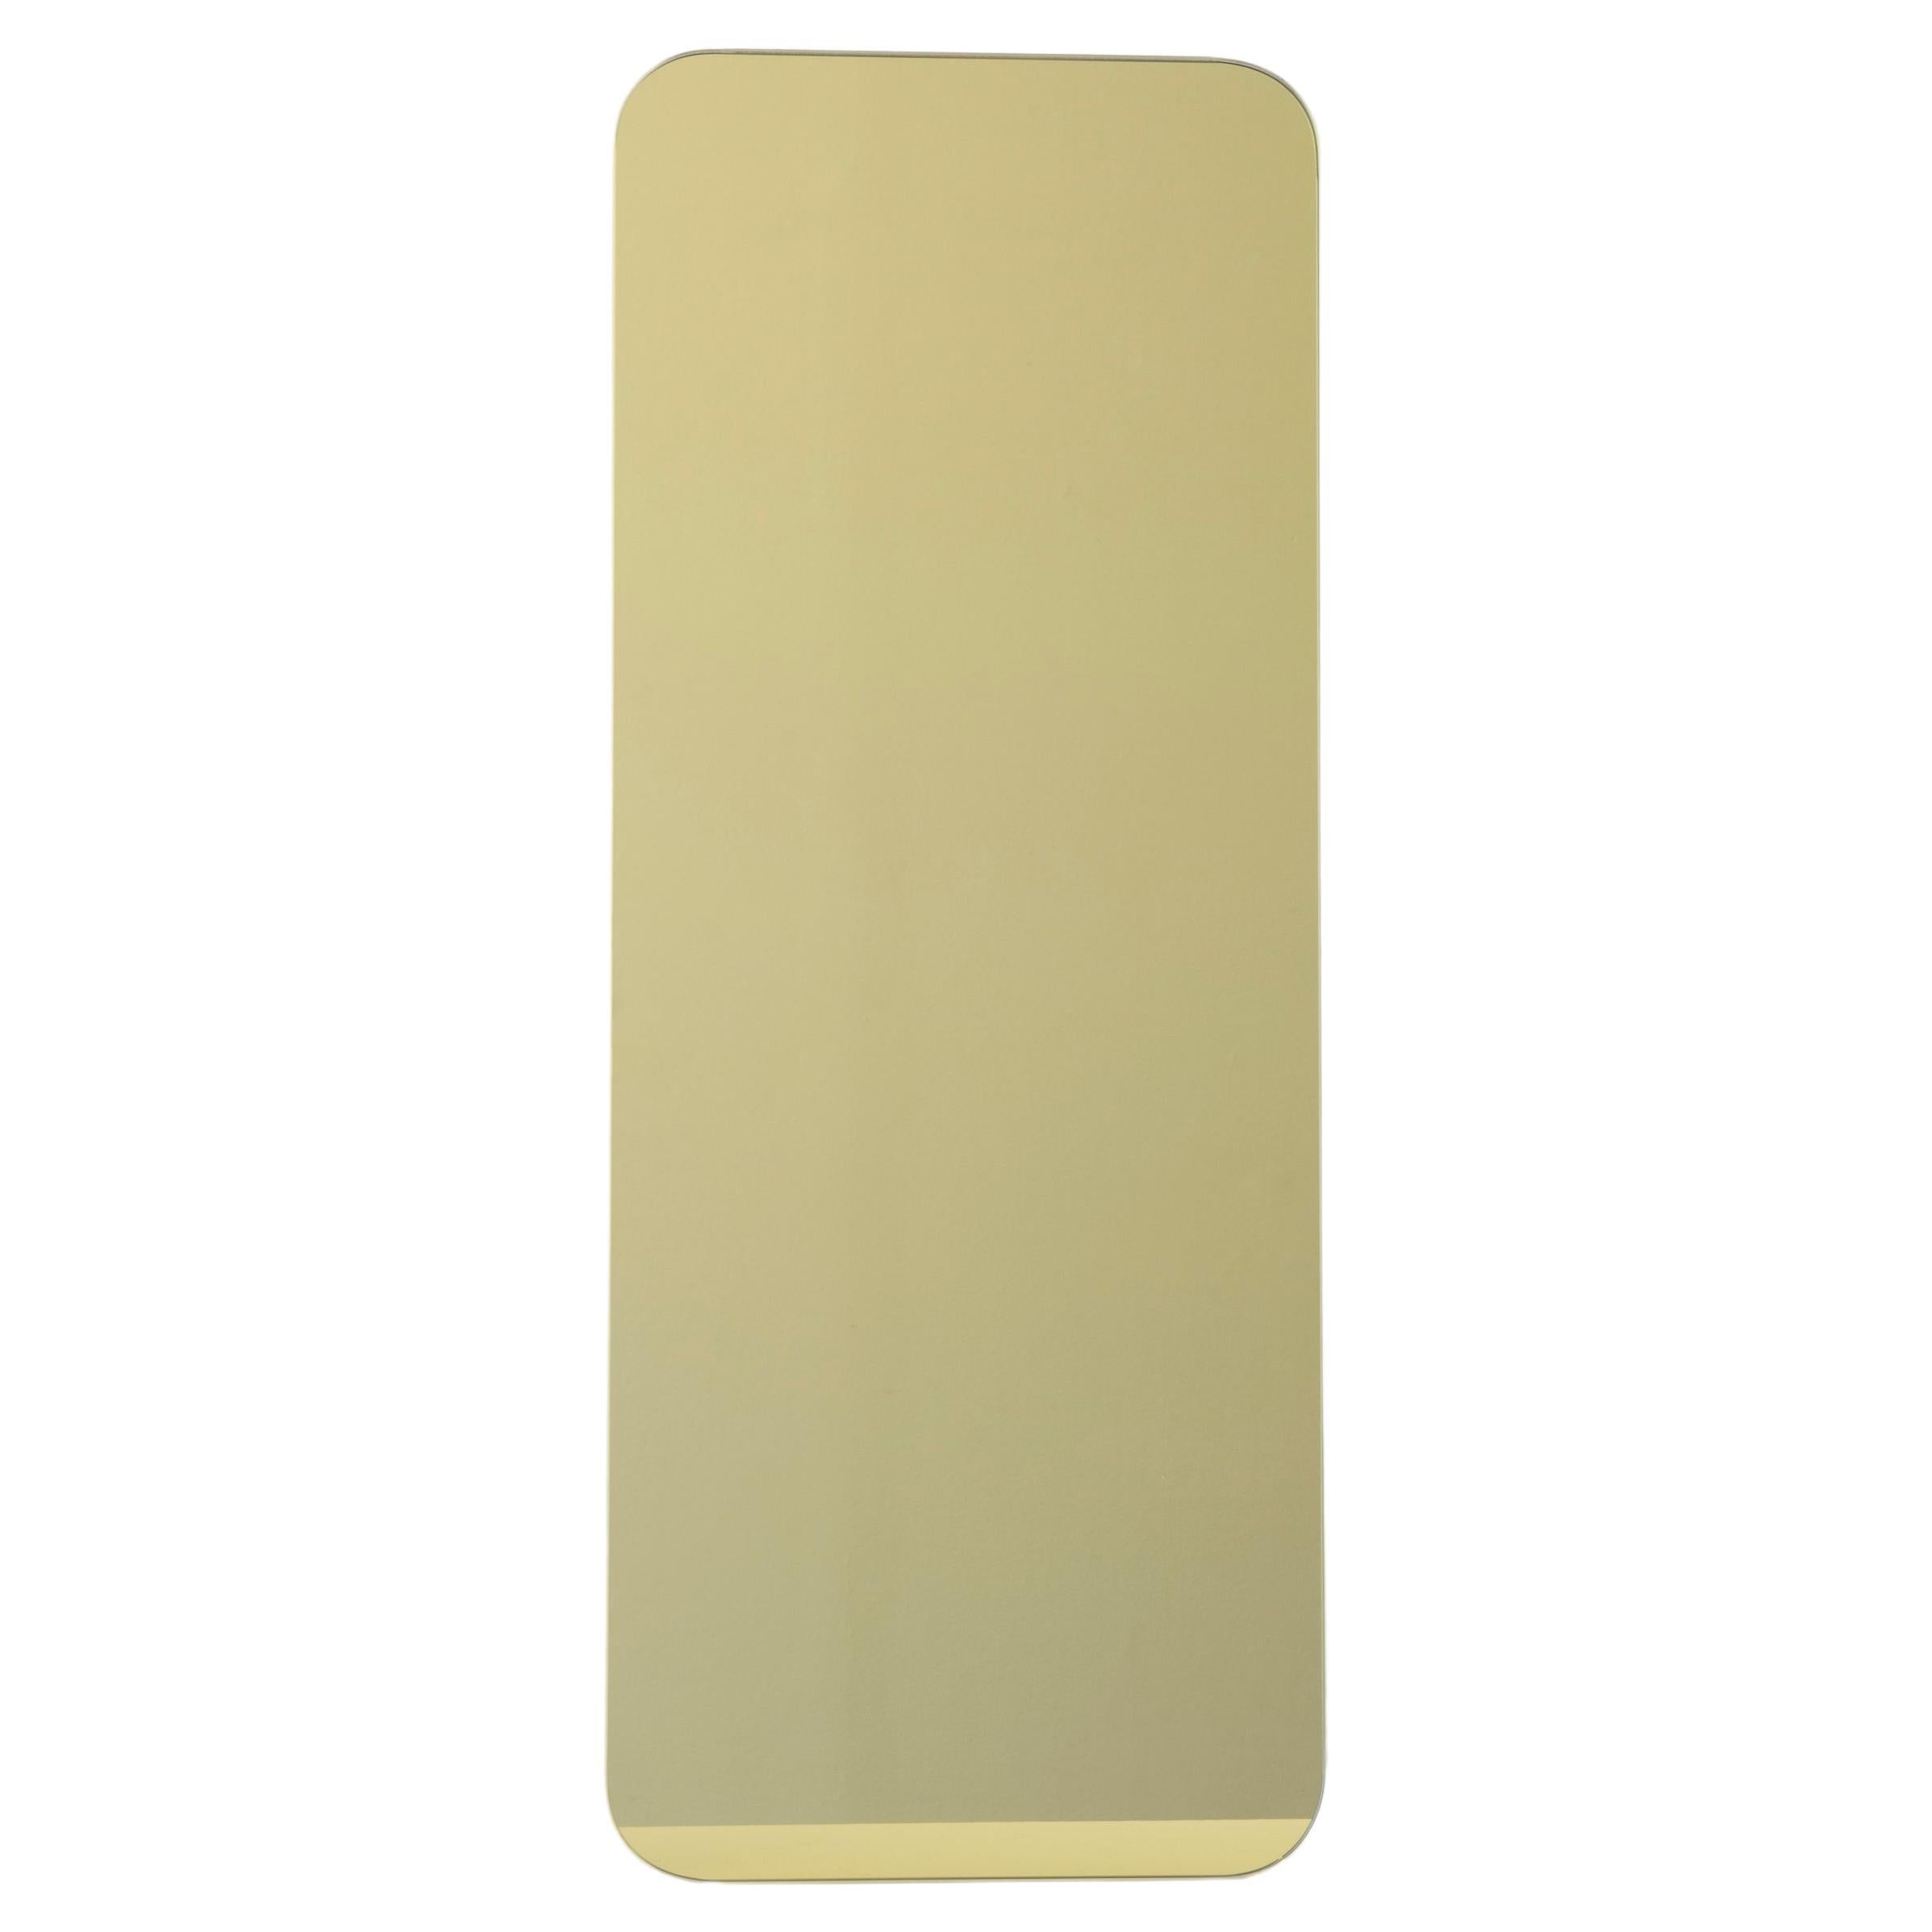 Quadris Gold Rechteckiger rahmenloser Contemporary-Spiegel mit Schwebeeffekt, XL